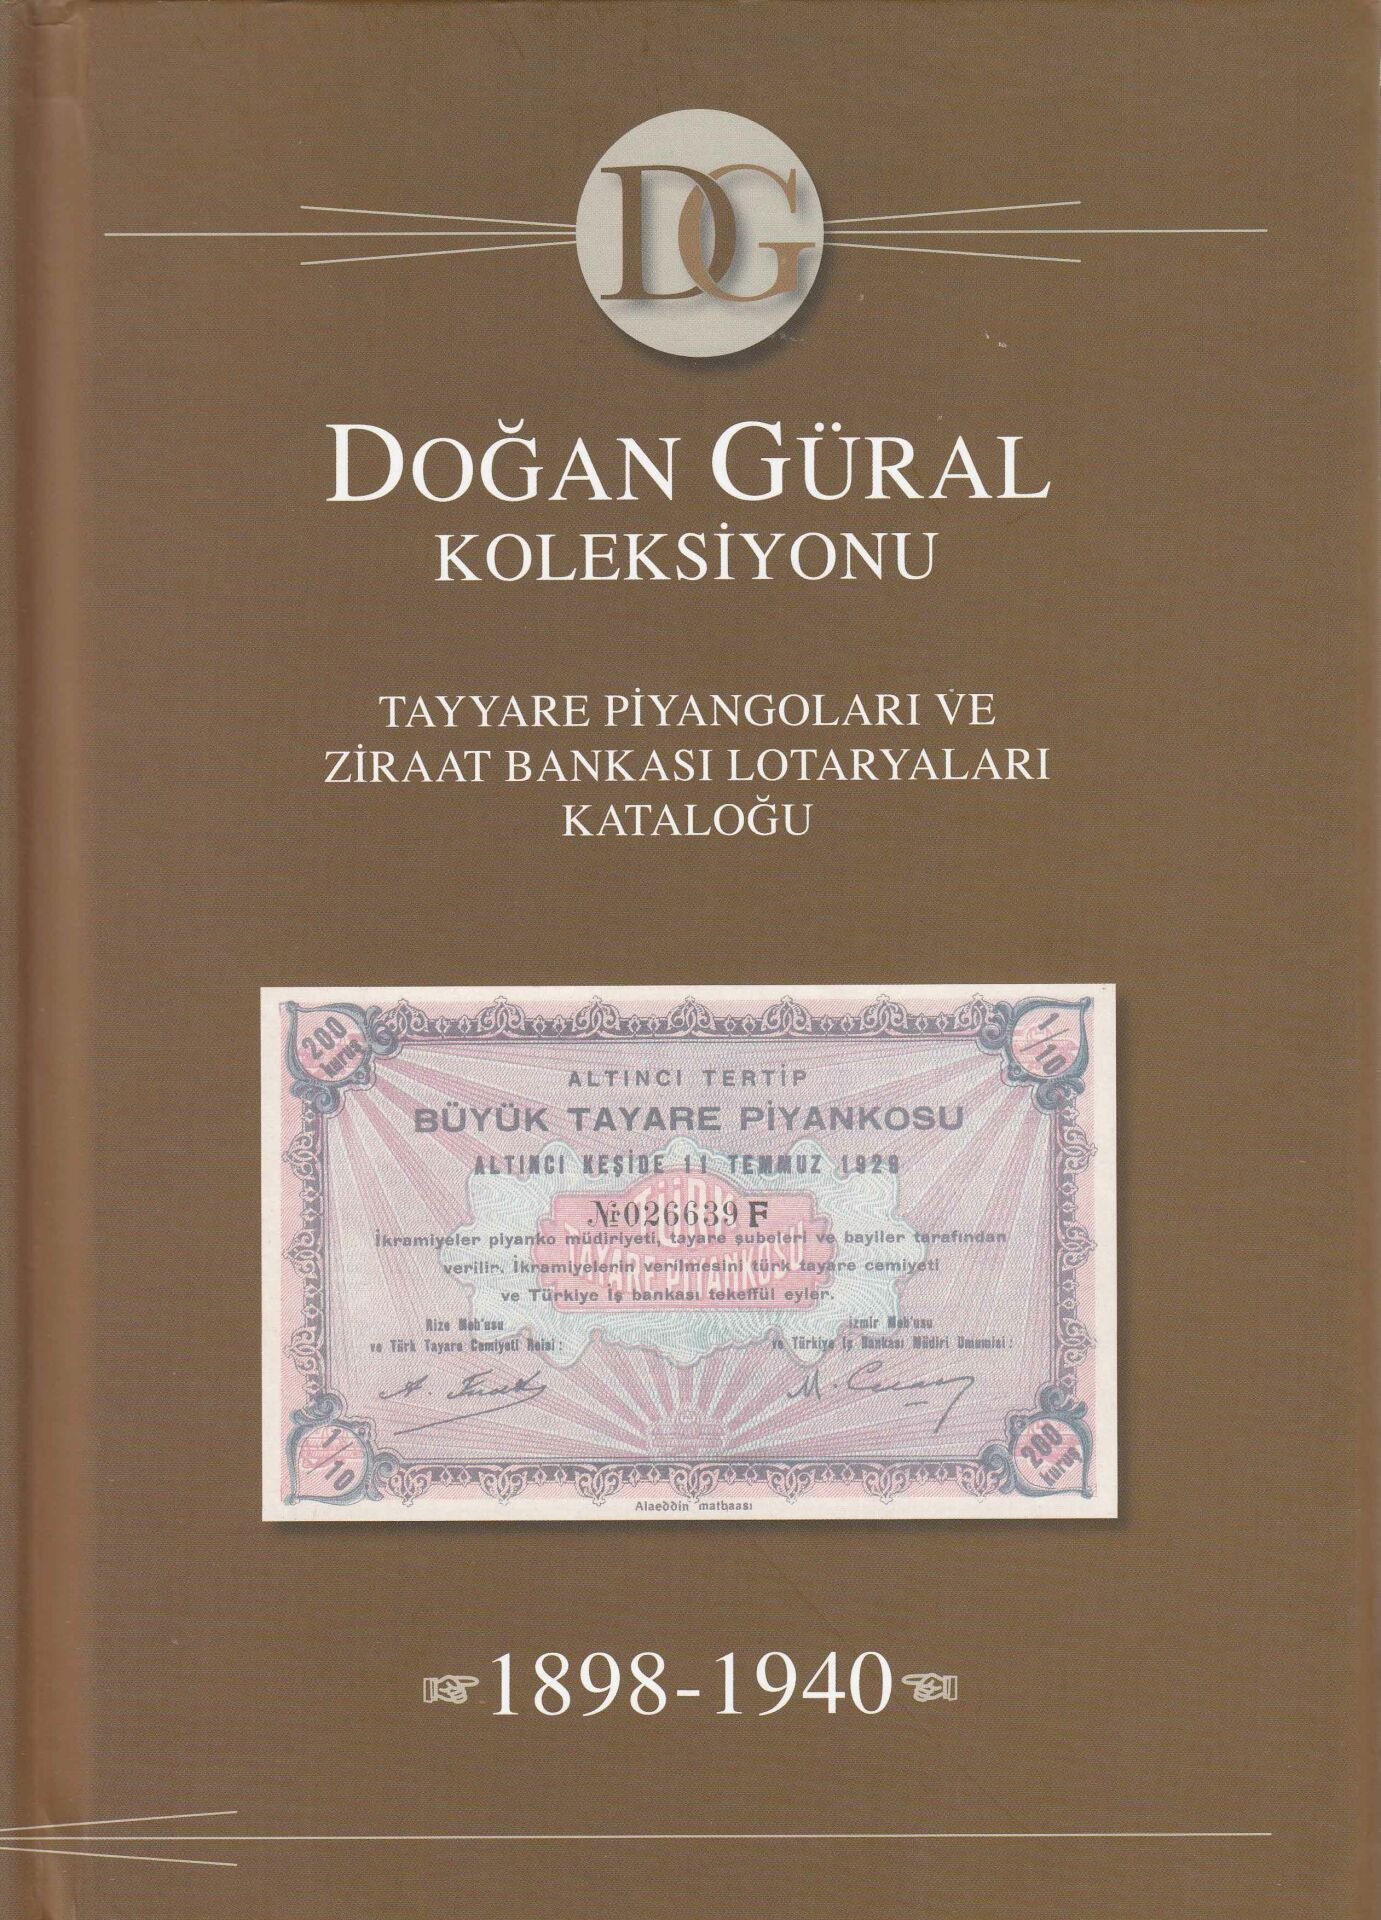 Tayyare Piyangoları ve Ziraat Bankası Lotaryaları Kataloğu, 1898-1940. Doğan Güral Koleksiyonu